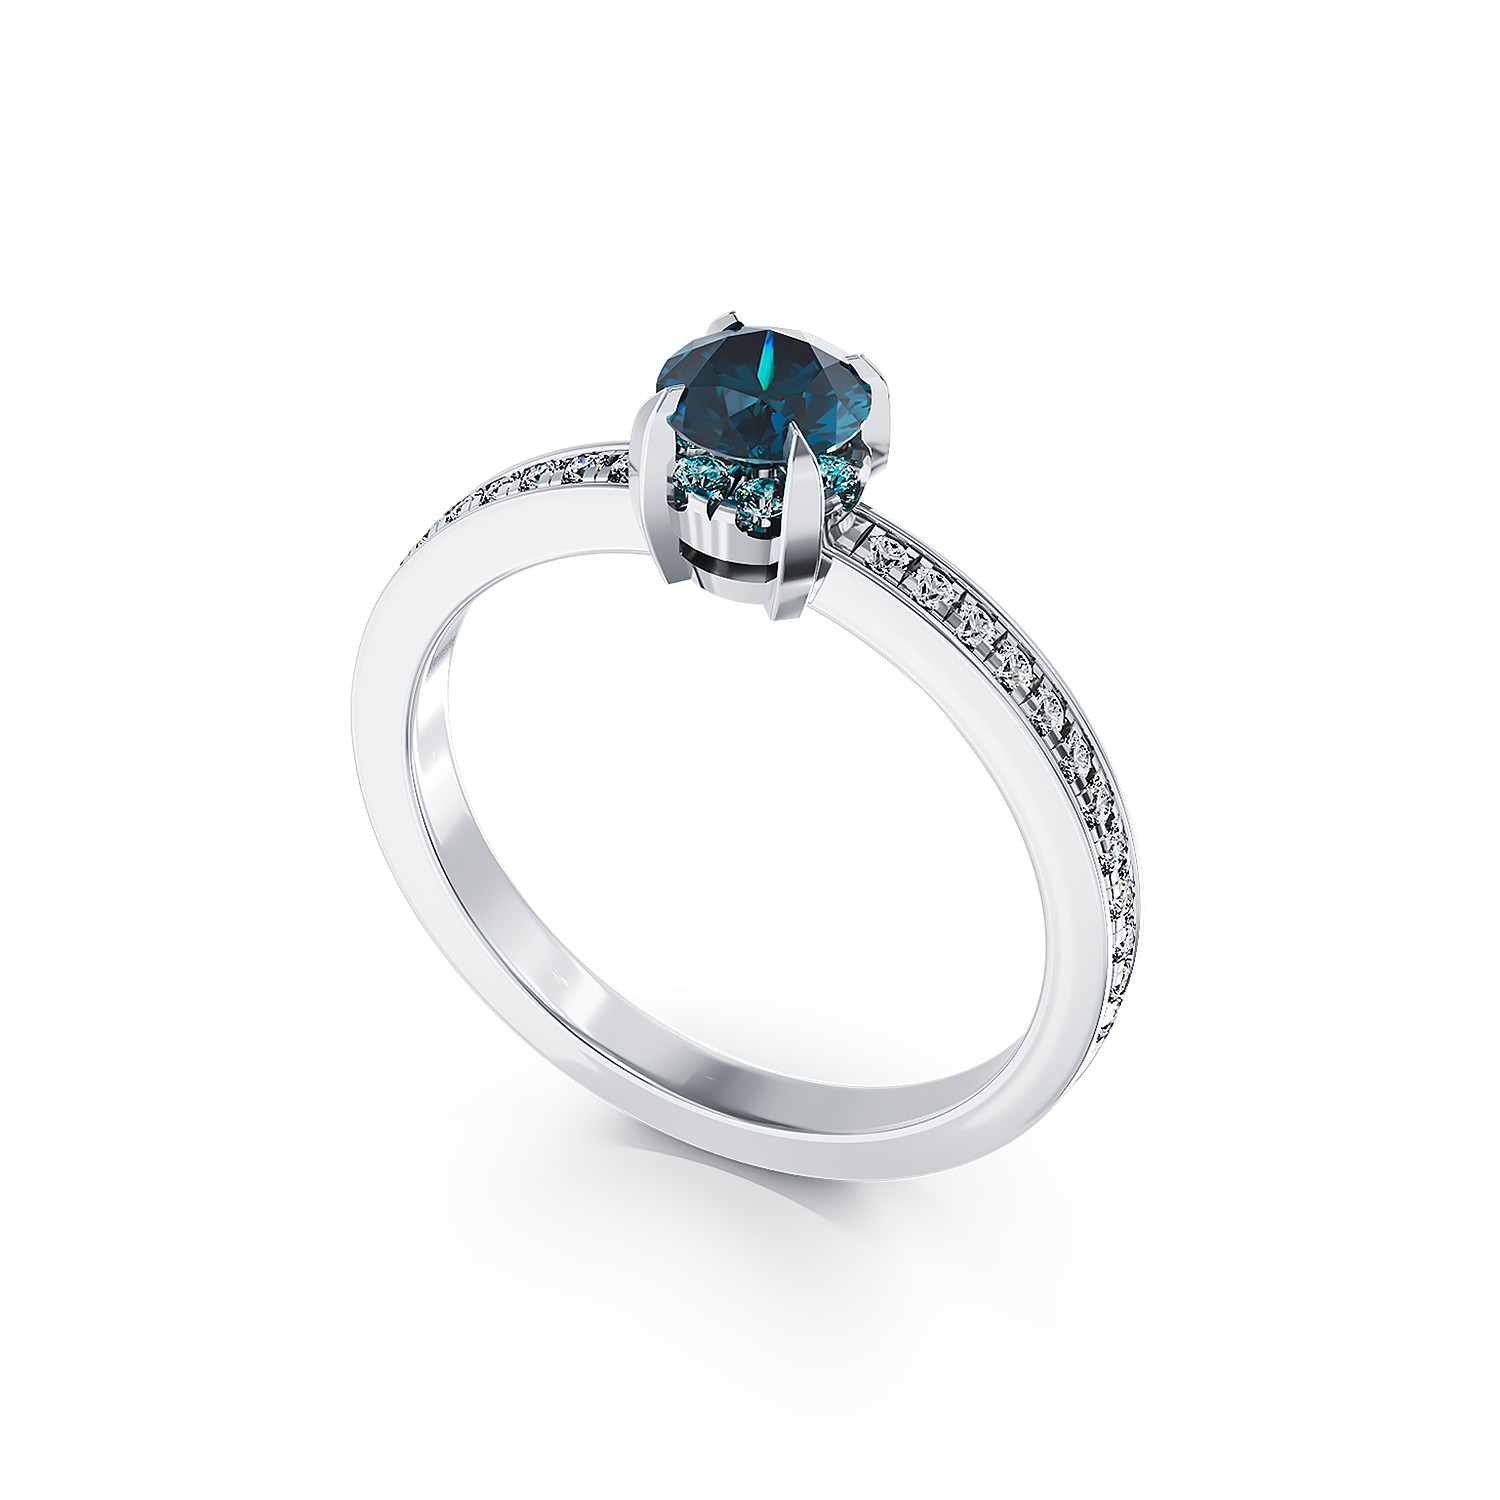 18K fehérarany eljegyzési gyűrű 0.41kt kék gyémántokkal és 0.2kt tiszta gyémántokkal